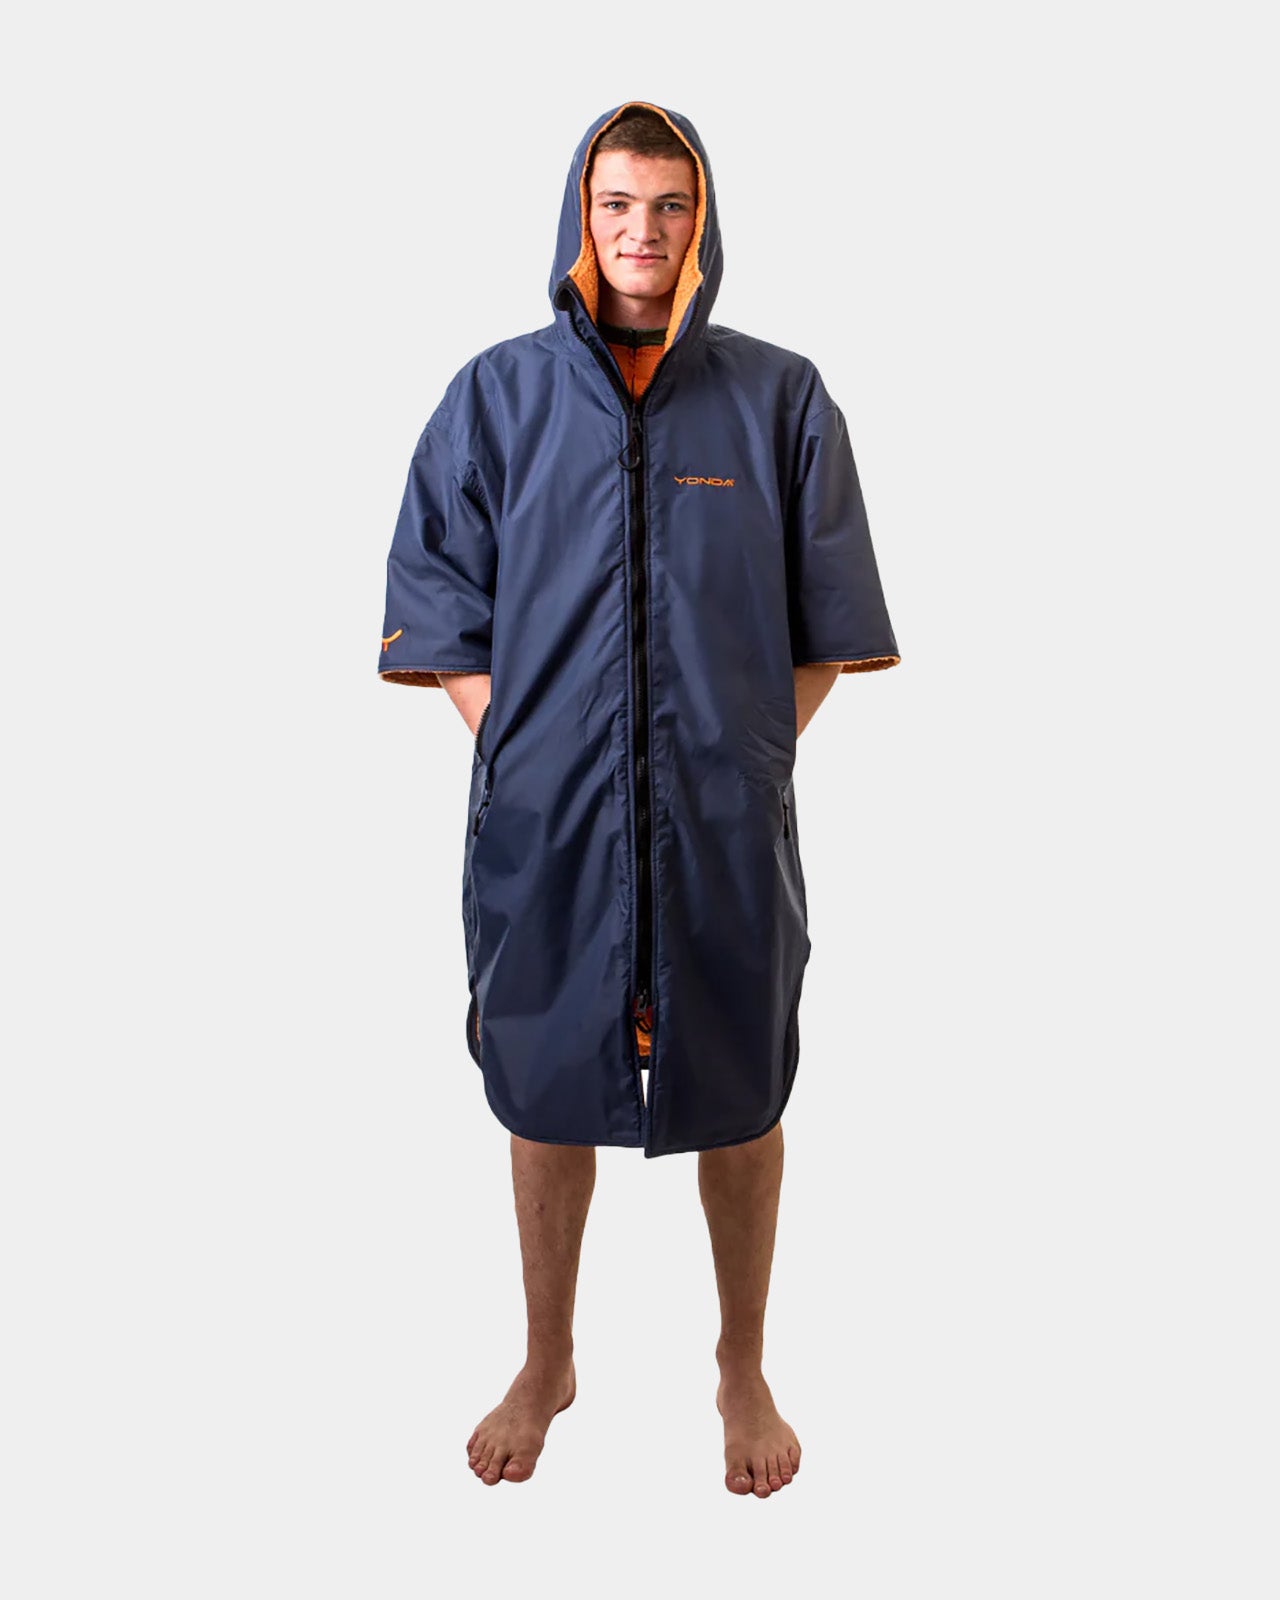 YONDA Waterproof Changing Robe - Navy & Orange